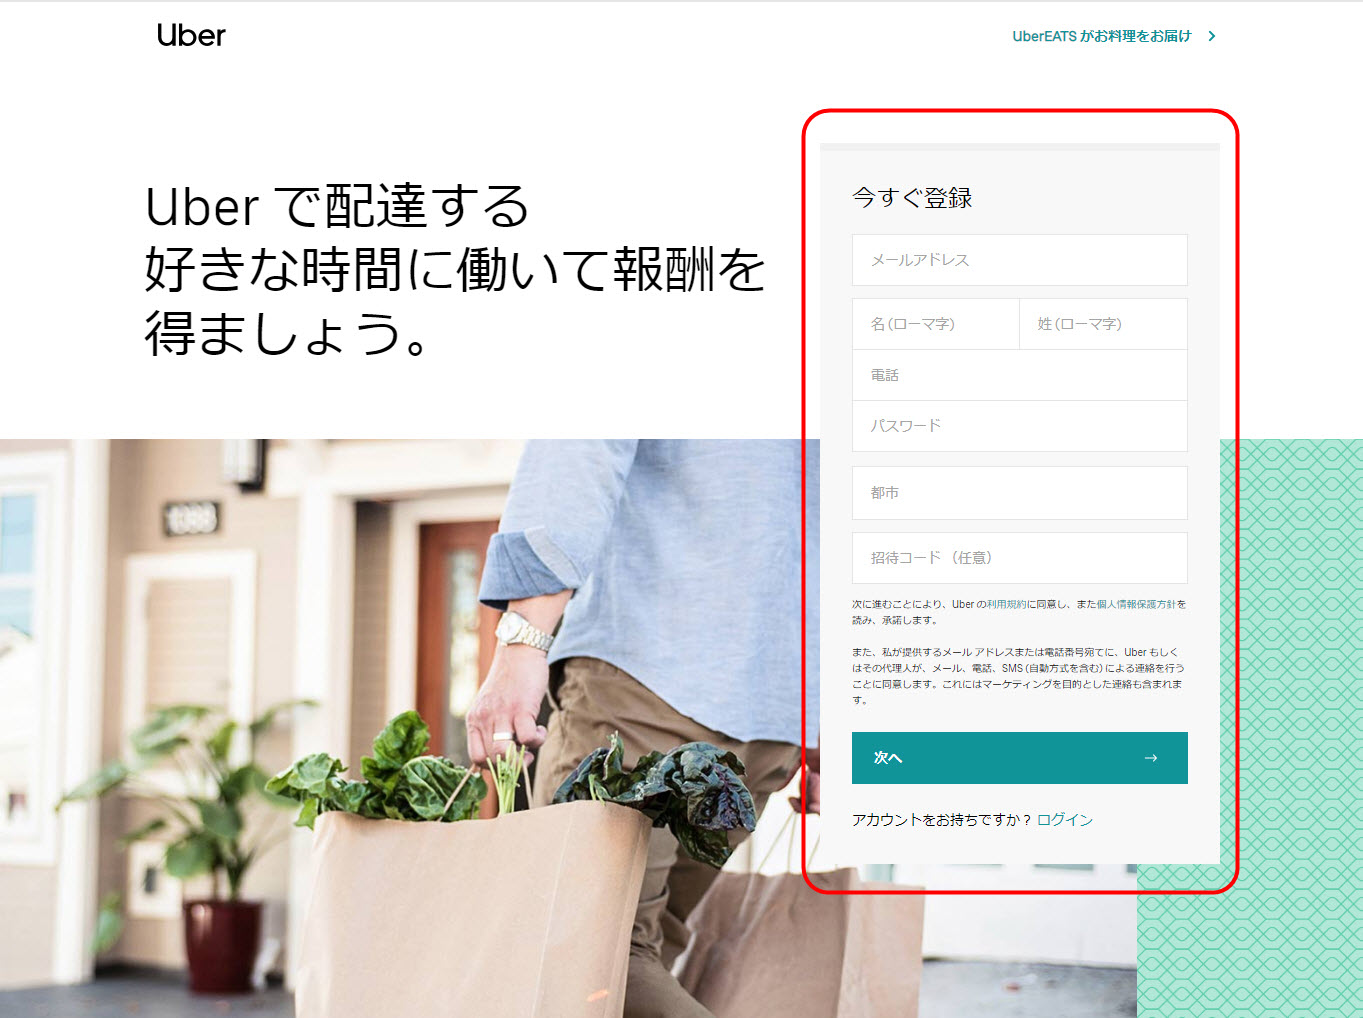 ウーバーイーツ 東大和市 登録 東京都 東大和 バイト エリア 始める 登録方法 始め方 配達パートナー 対象地域 範囲外 対応地域 サービスエリア外 UberEats Uber Eats